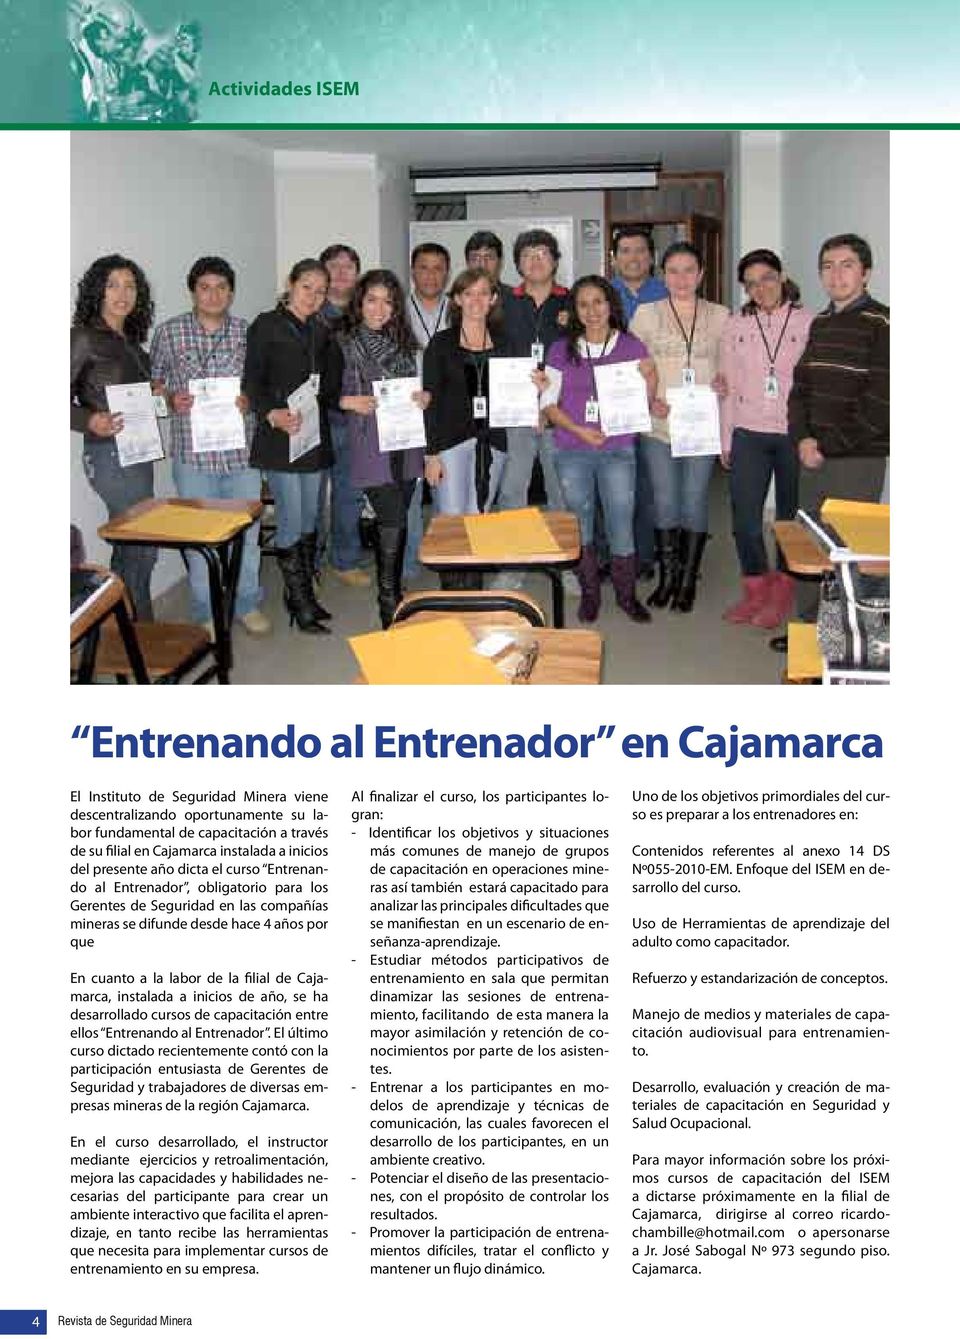 labor de la filial de Cajamarca, instalada a inicios de año, se ha desarrollado cursos de capacitación entre ellos Entrenando al Entrenador.